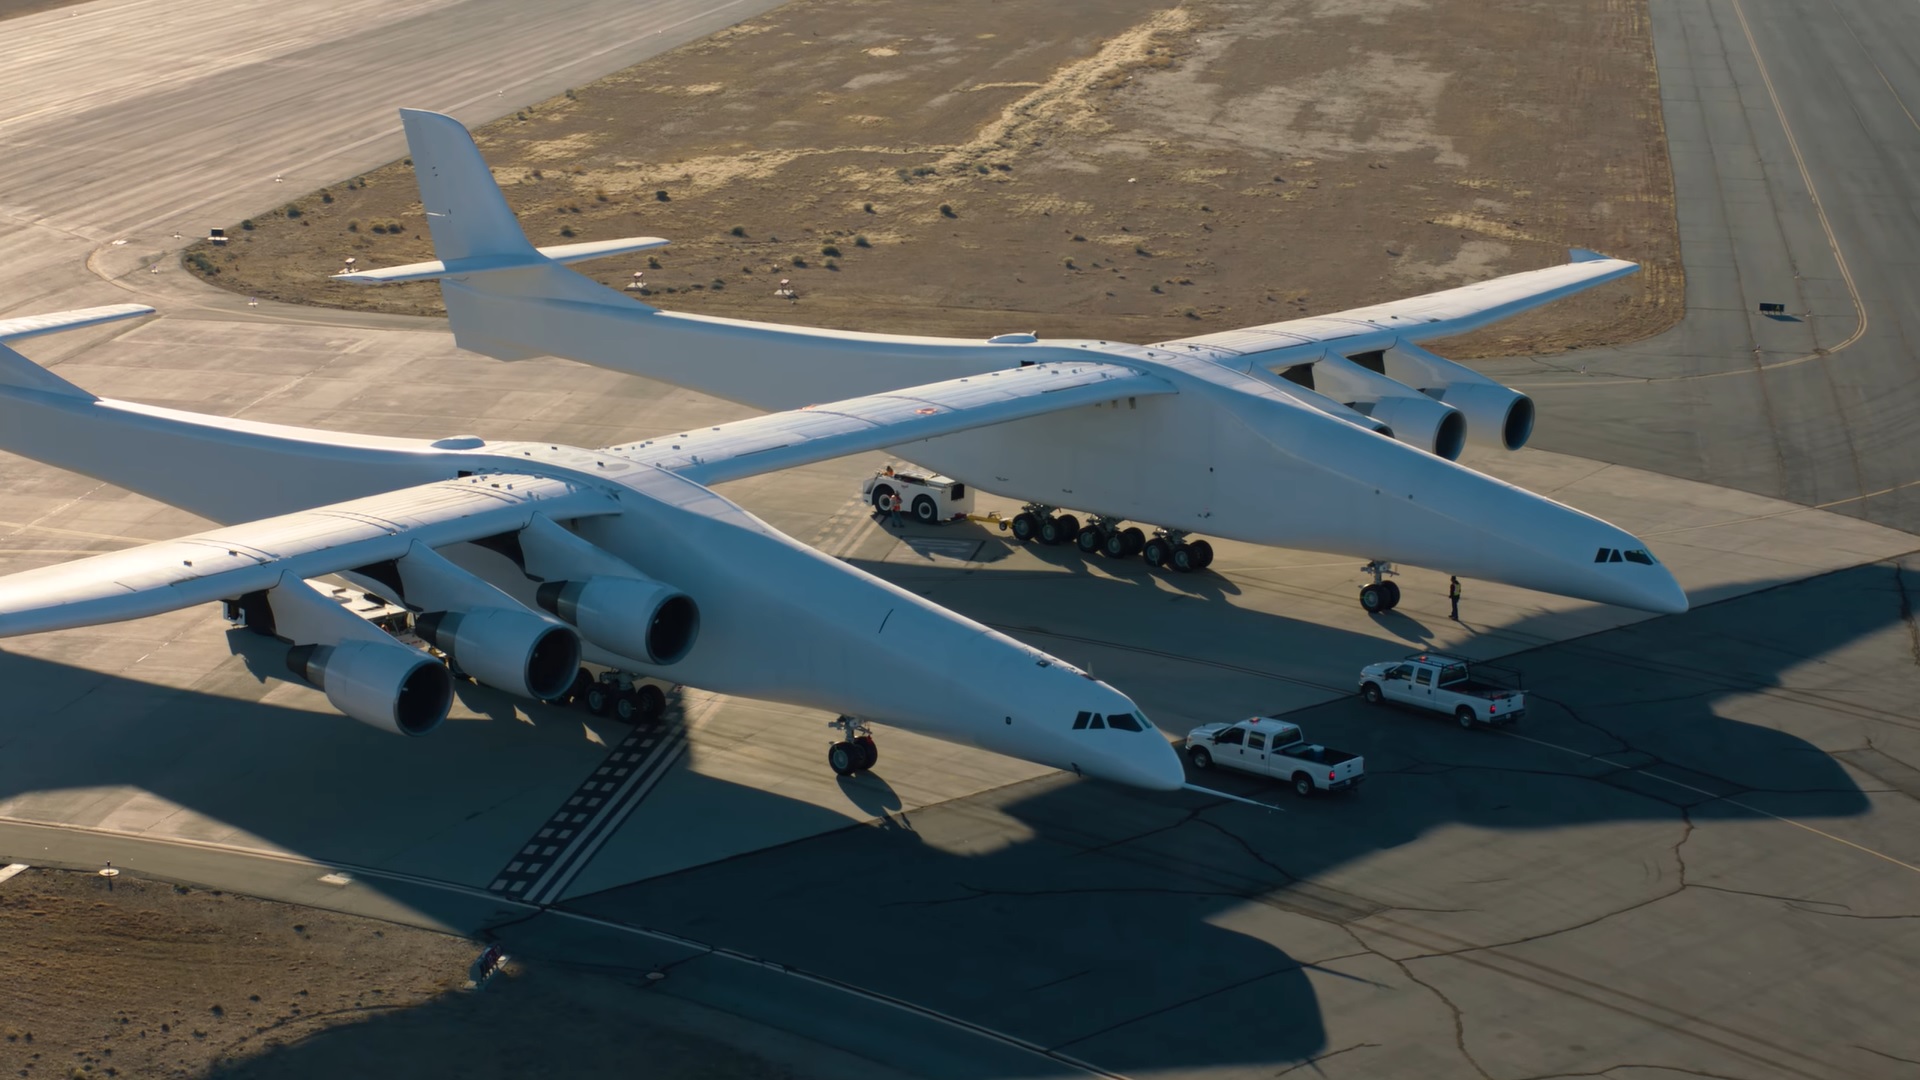 A földön is bámulatos látvány a Stratolaunch, a világ legnagyobb repülőgépe